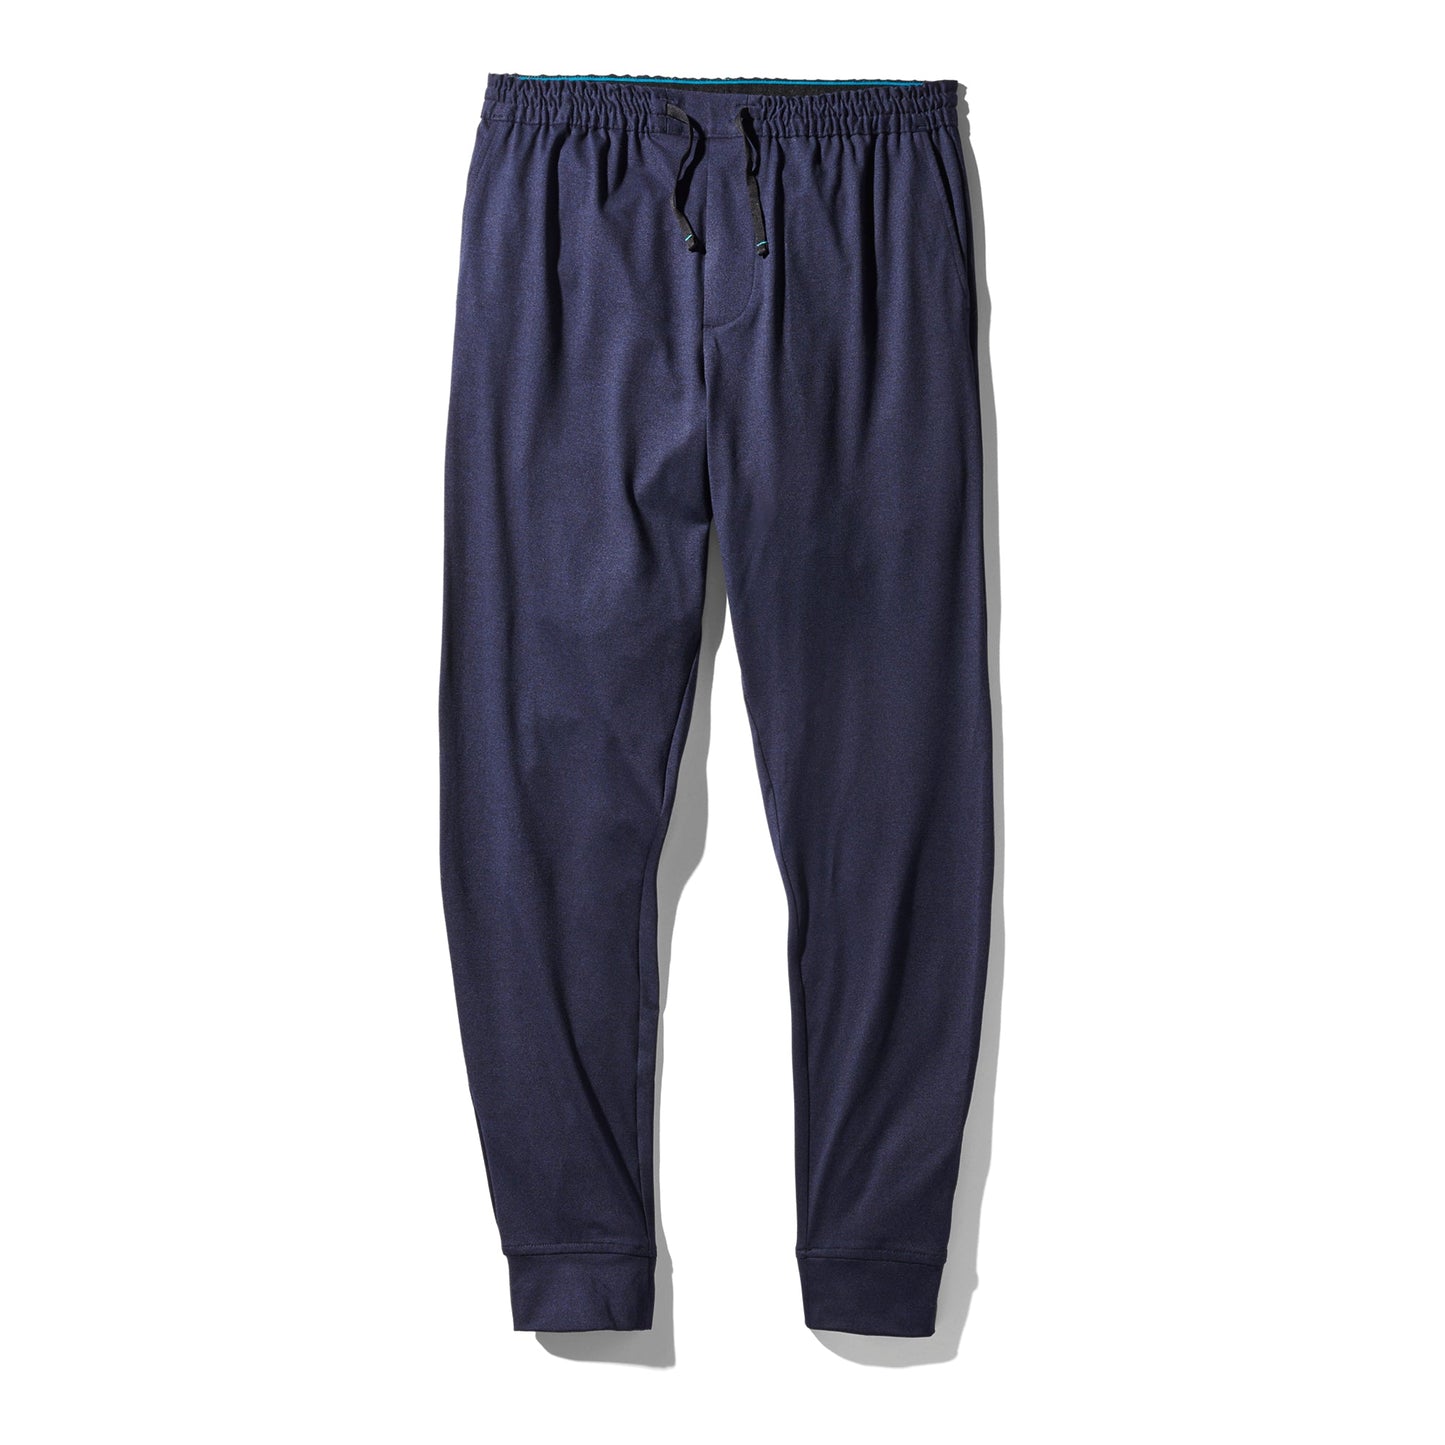 Pantalon de jogging bleu marine Primer de Stance